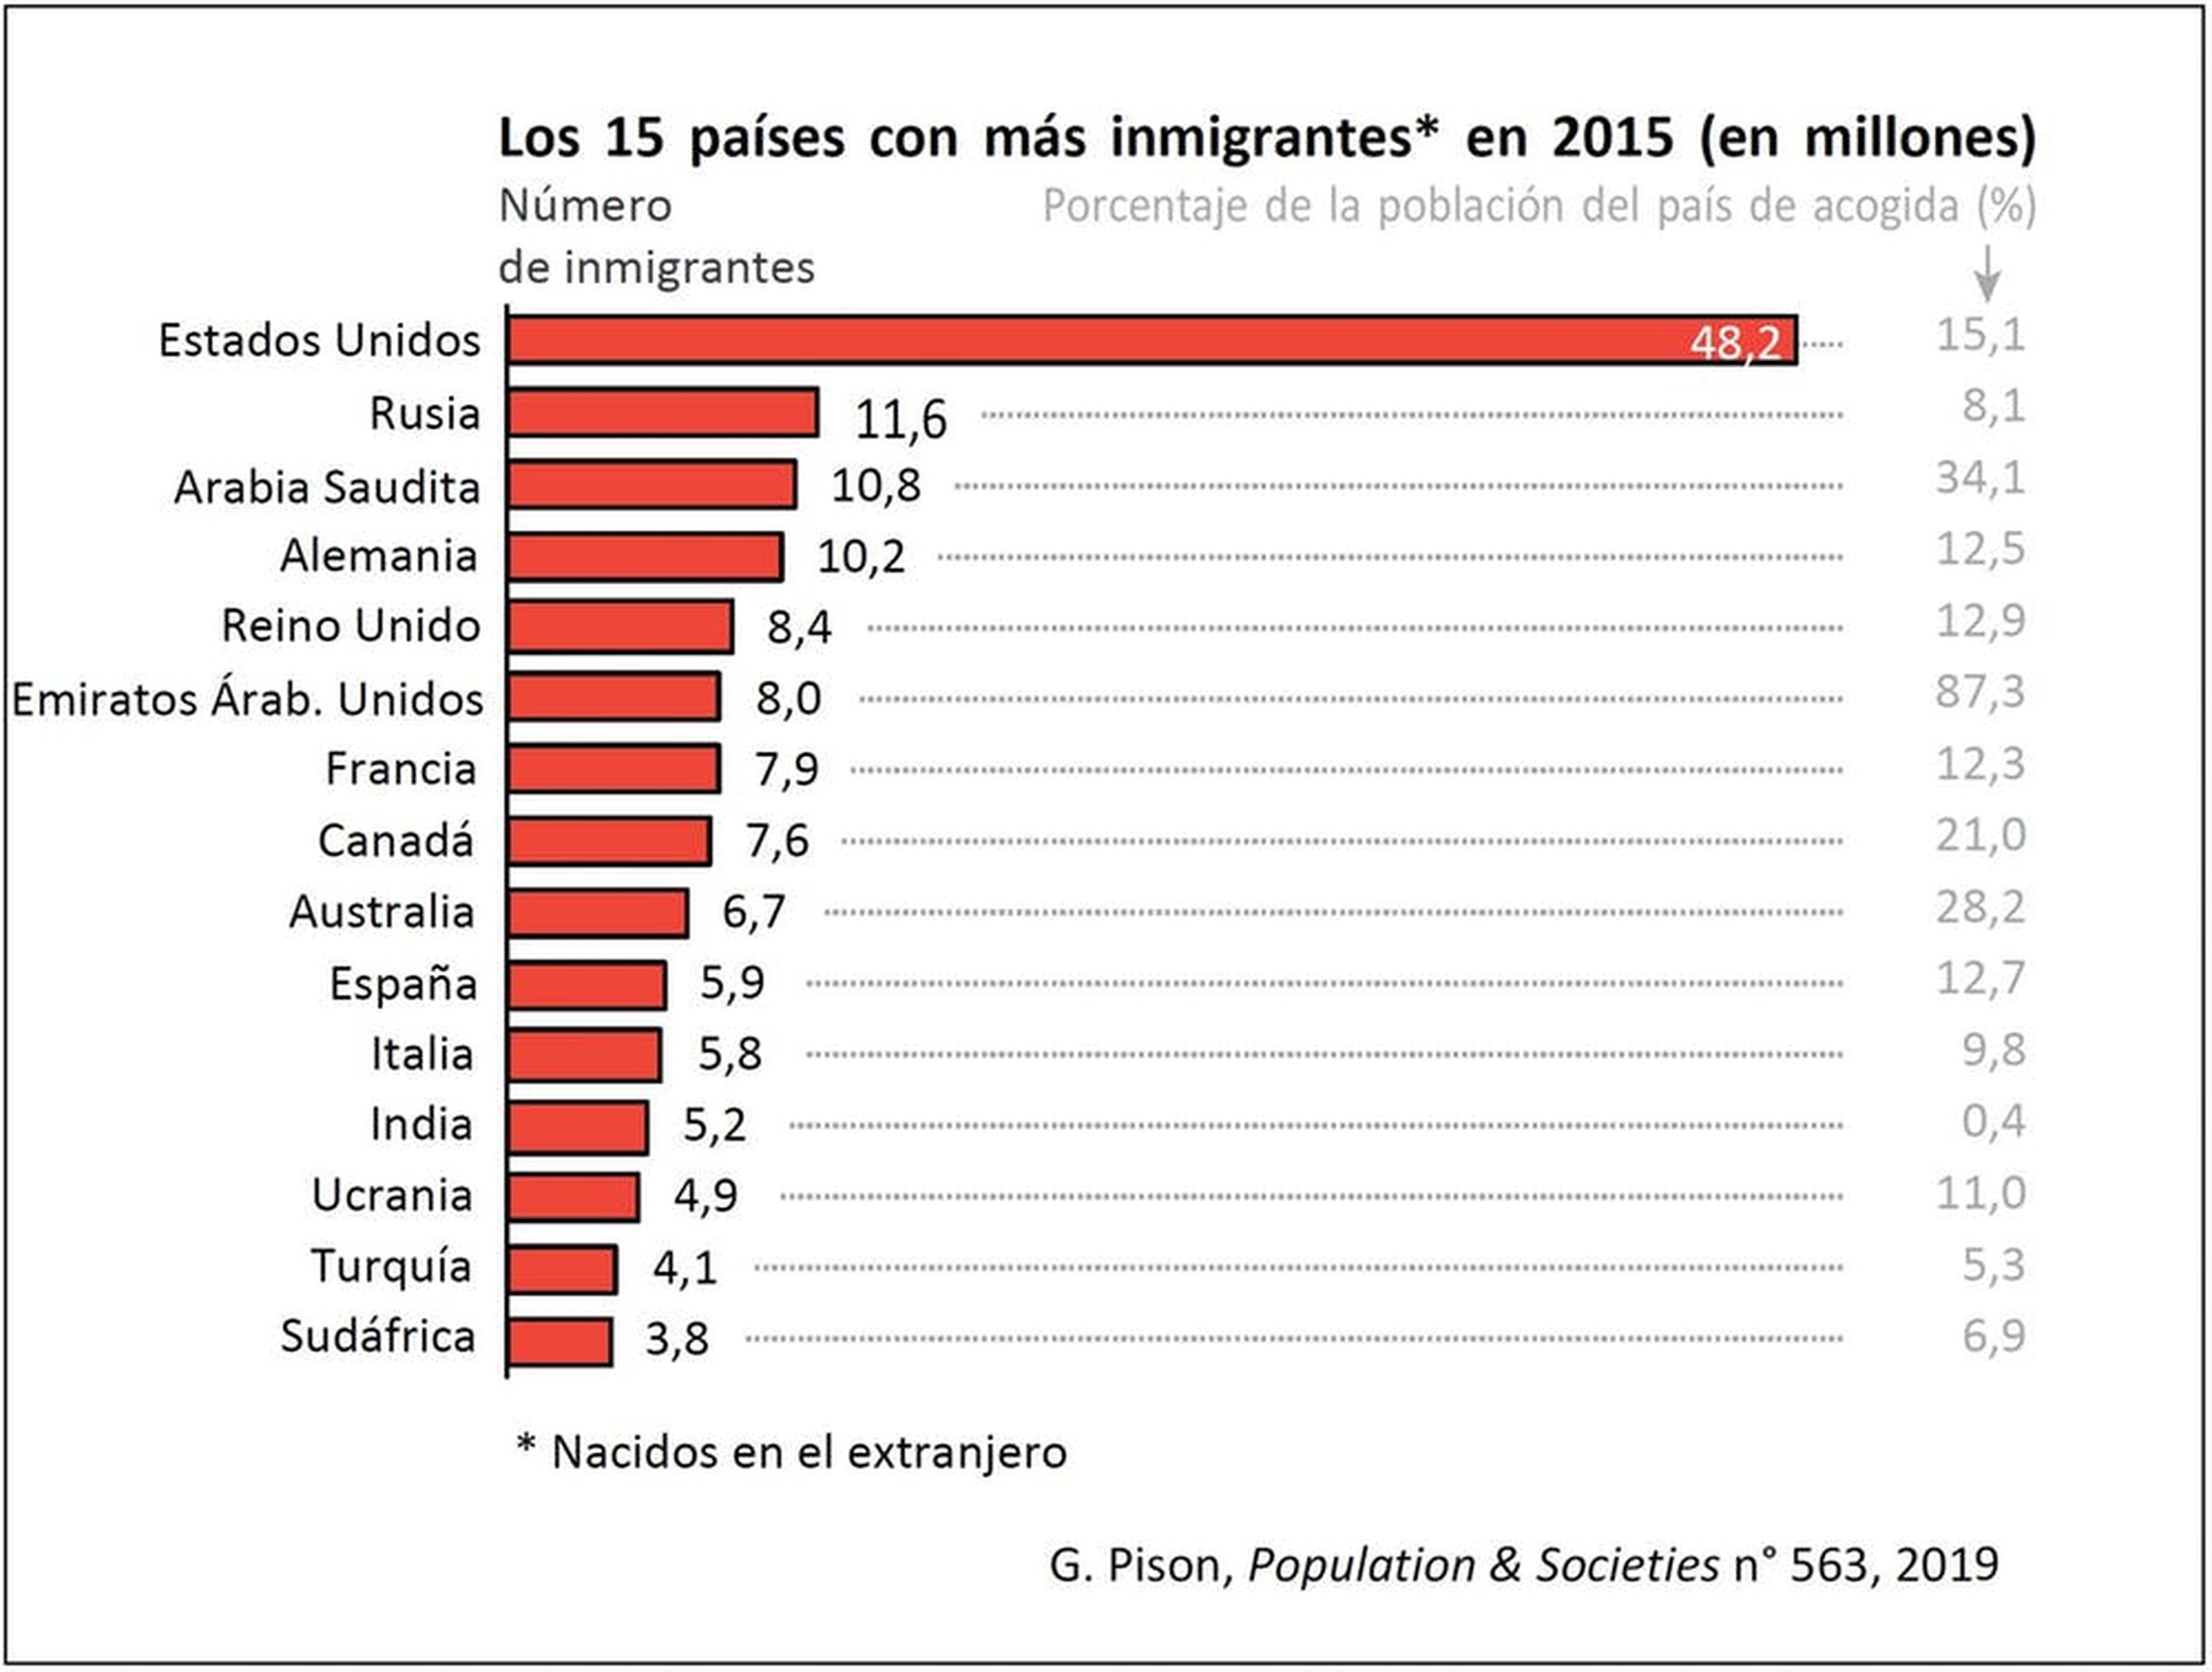 Los 15 países con más volumen de inmigrantes